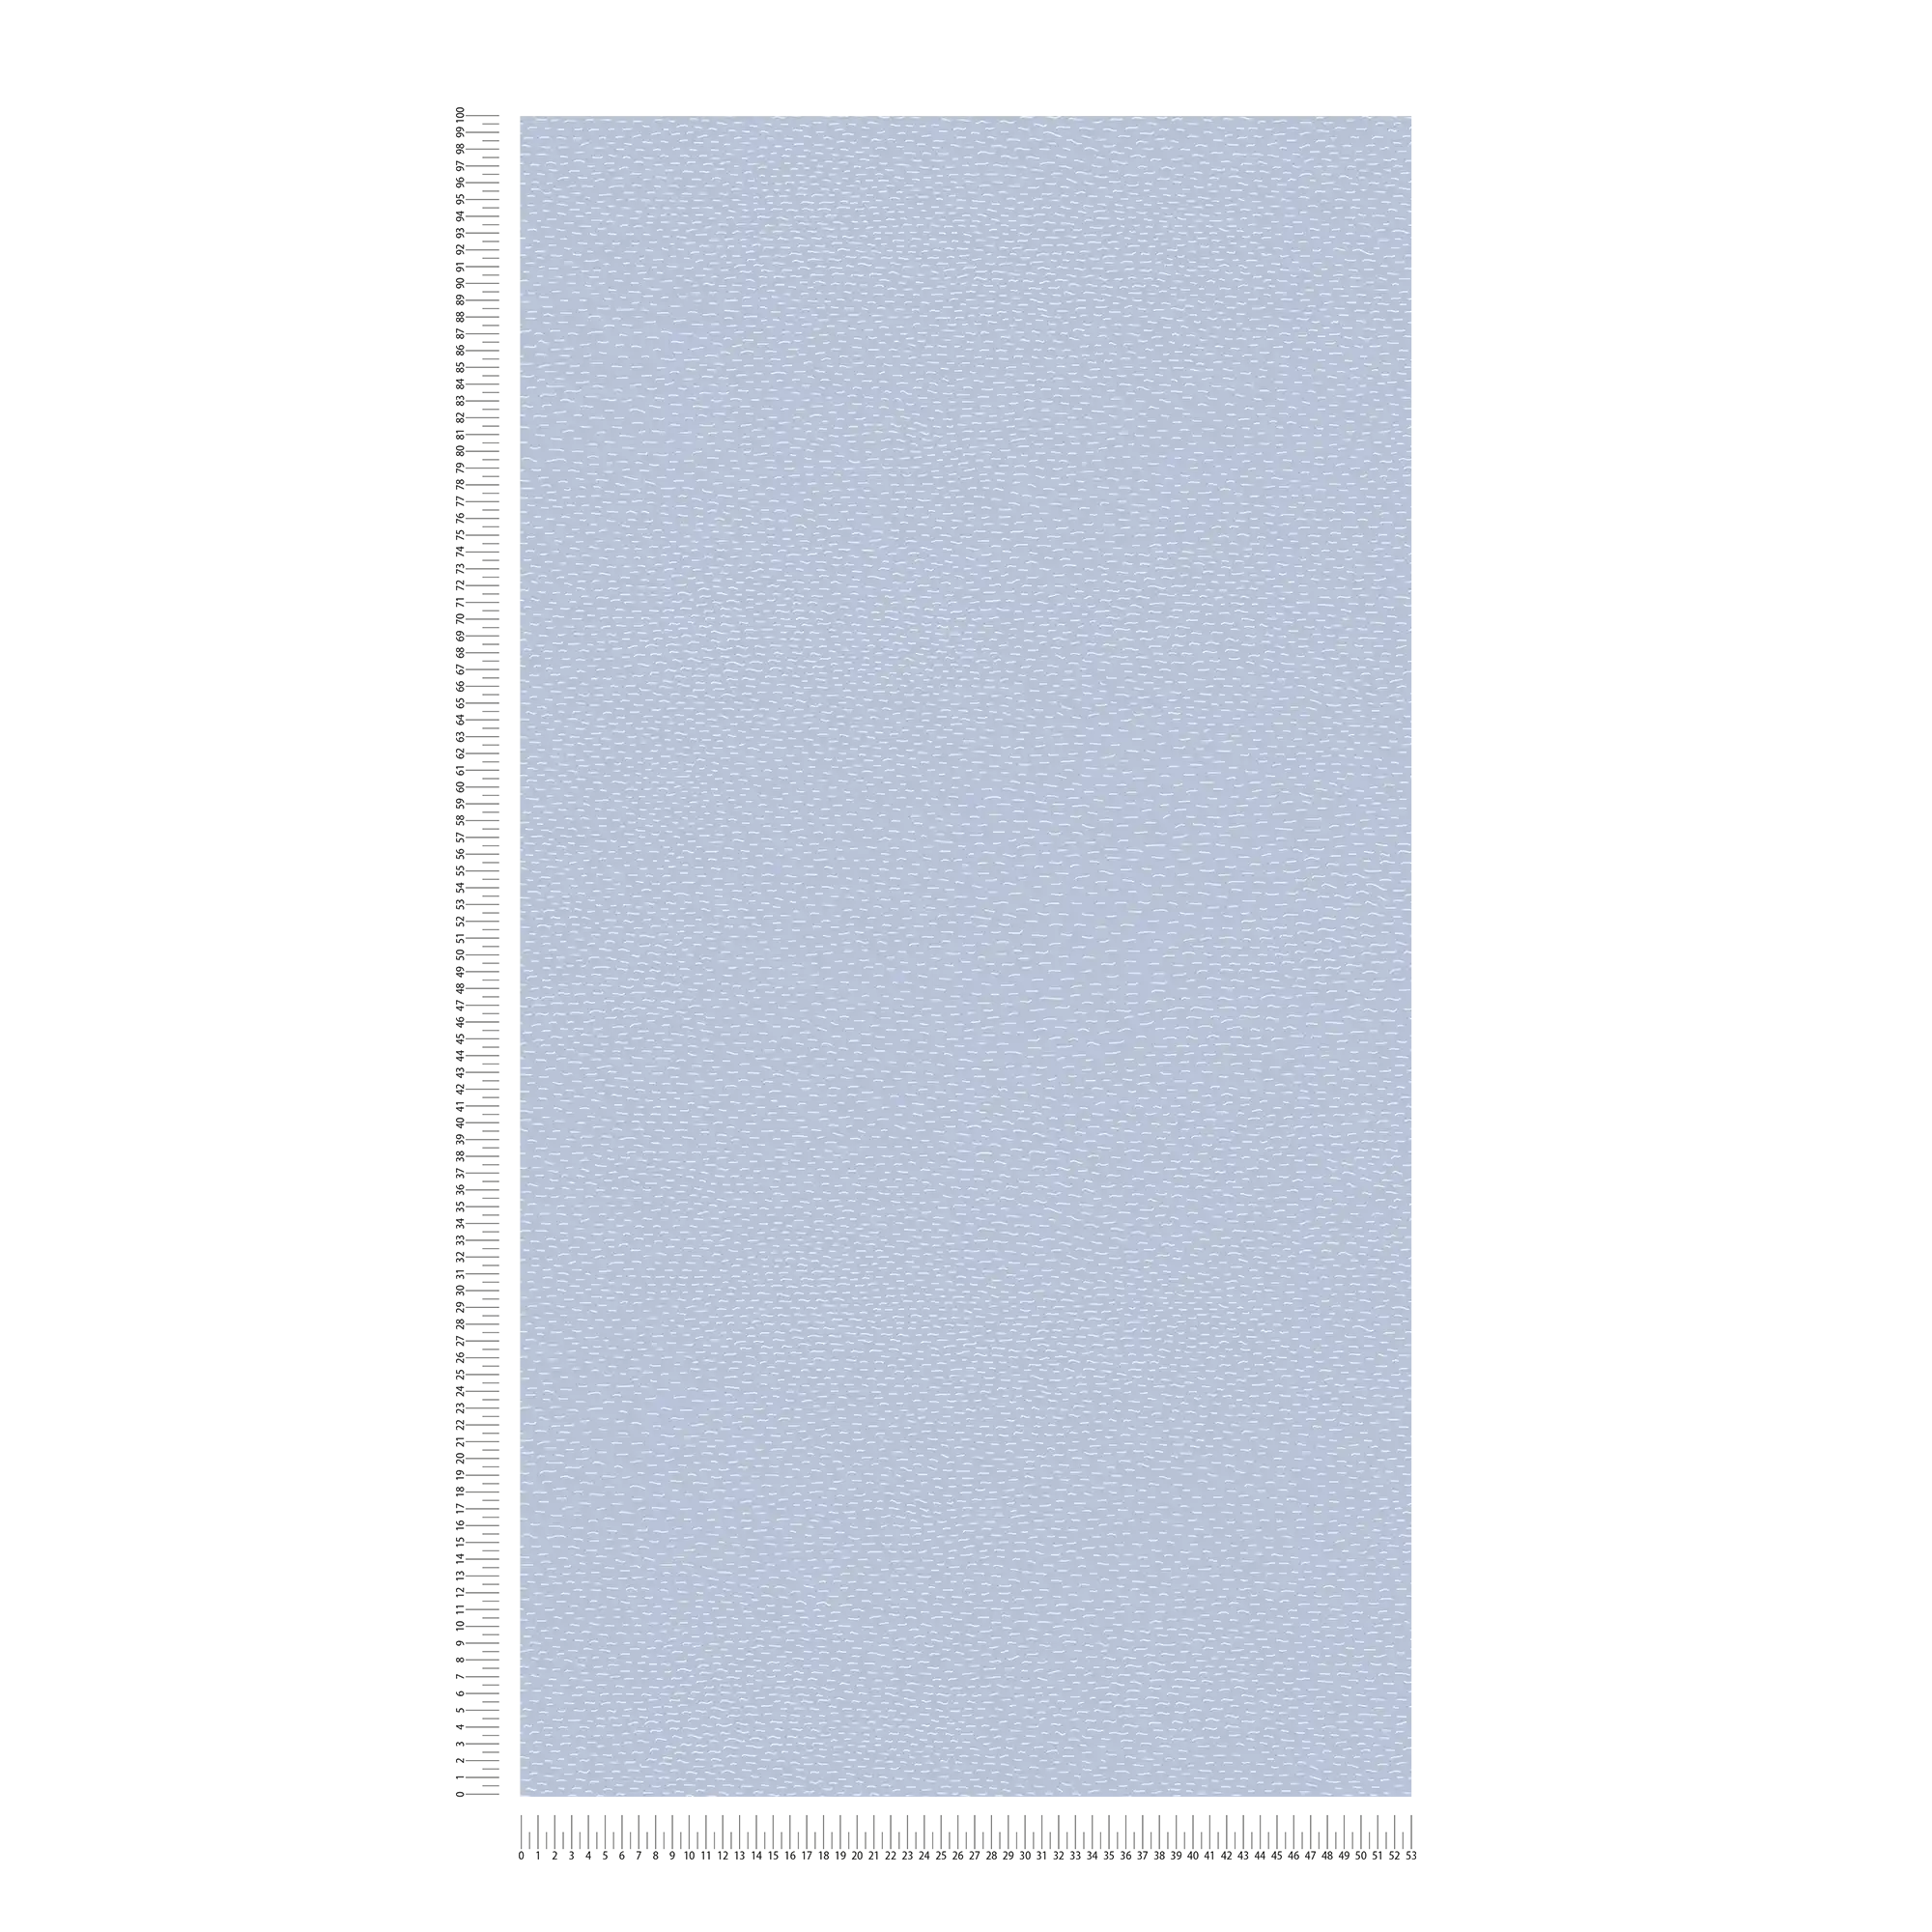             Carta da parati per cameretta a linee orizzontali - blu, grigio, bianco
        